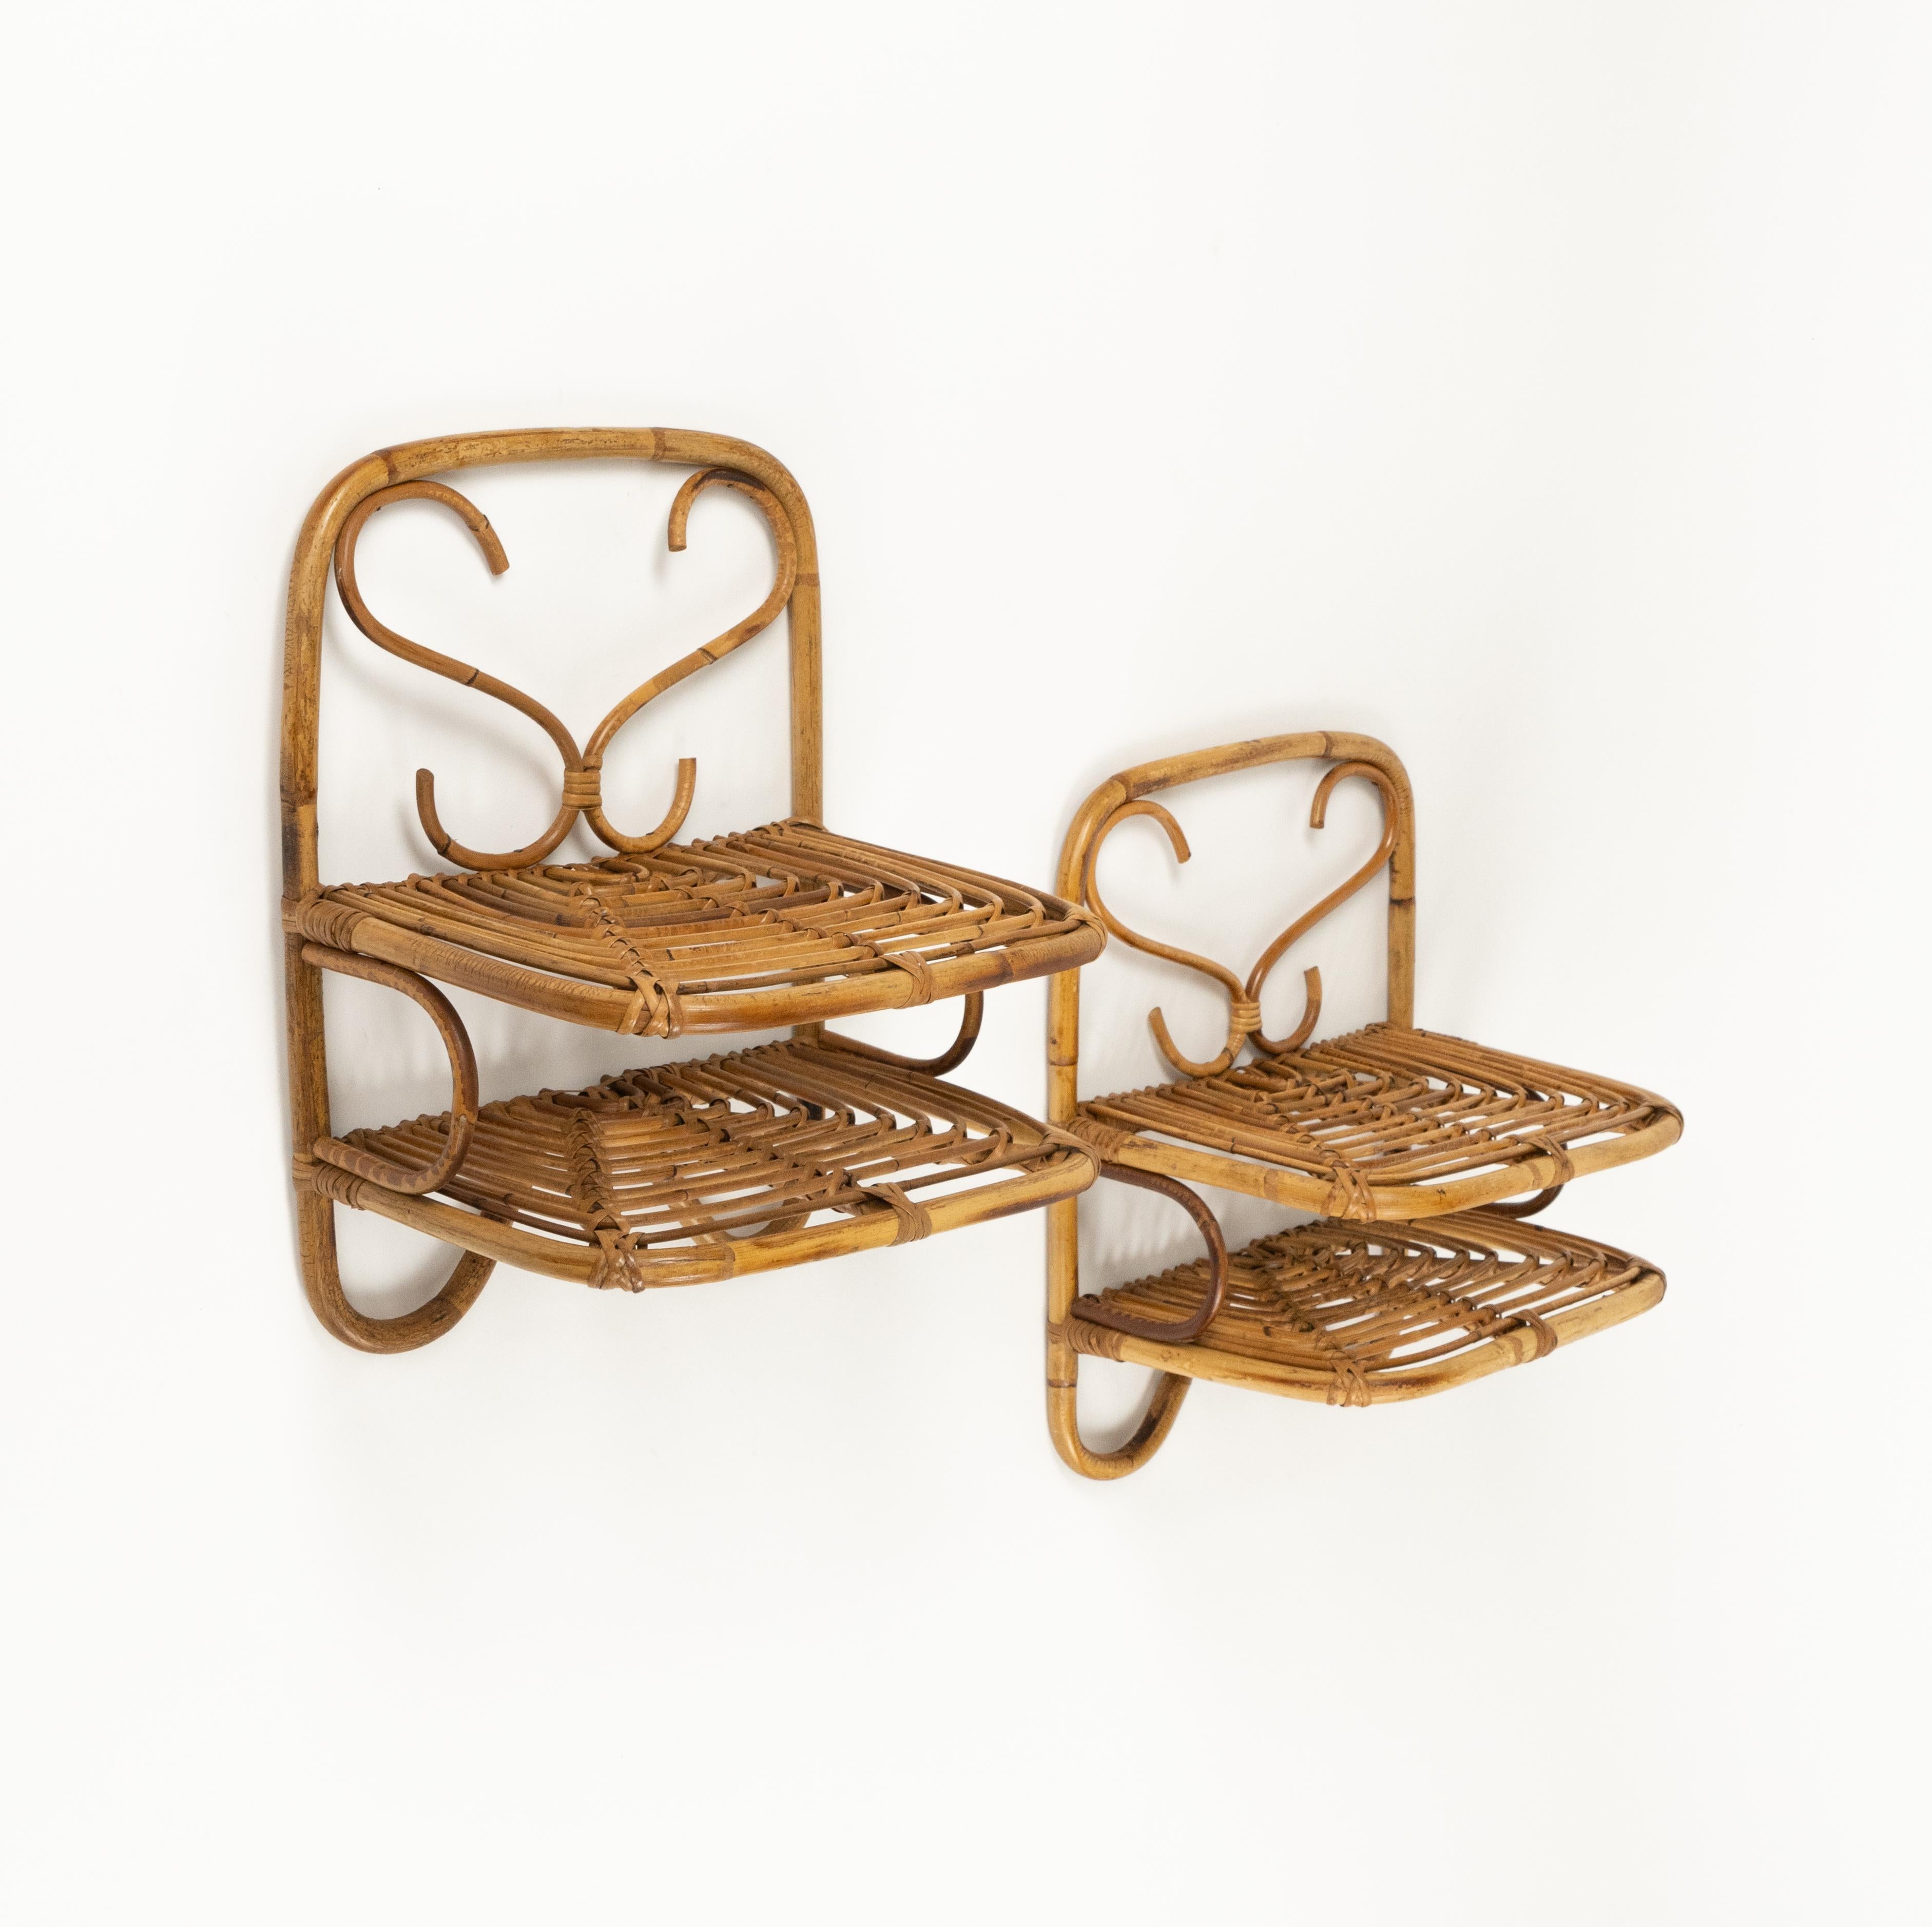 Etonnante paire d'étagères ou de tables d'appoint suspendues à deux niveaux en bambou et rotin dans le style de Franco Albini.

Fabriqué en Italie dans les années 1960.